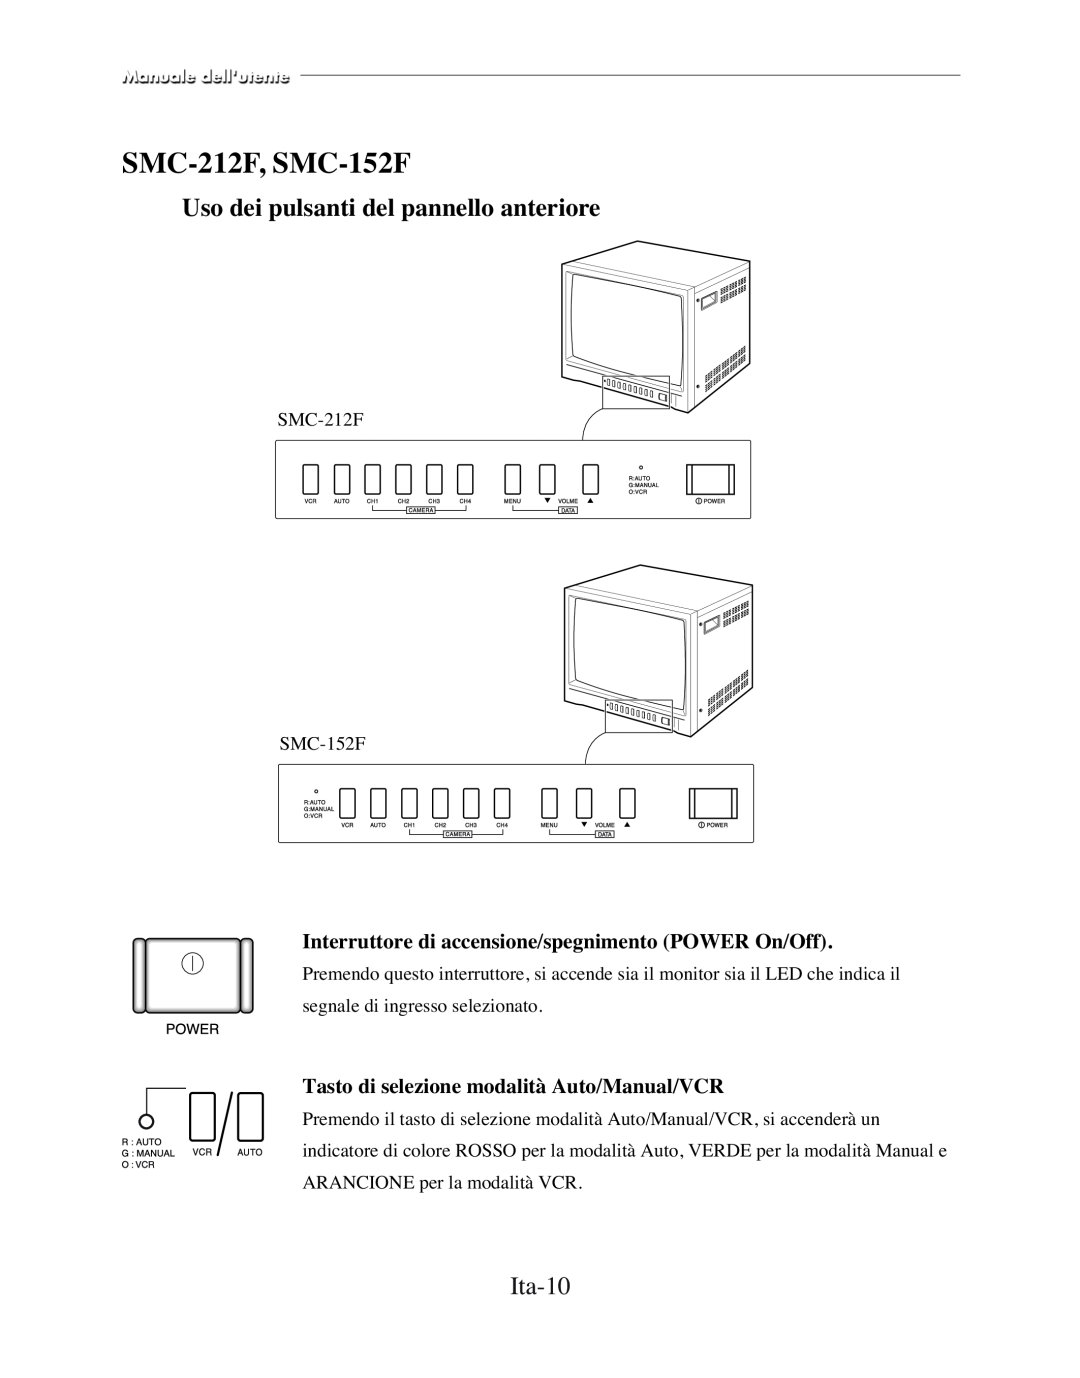 Samsung SMC-210FP Ita-10, Interruttore di accensione/spegnimento POWER On/Off, Tasto di selezione modalità Auto/Manual/VCR 